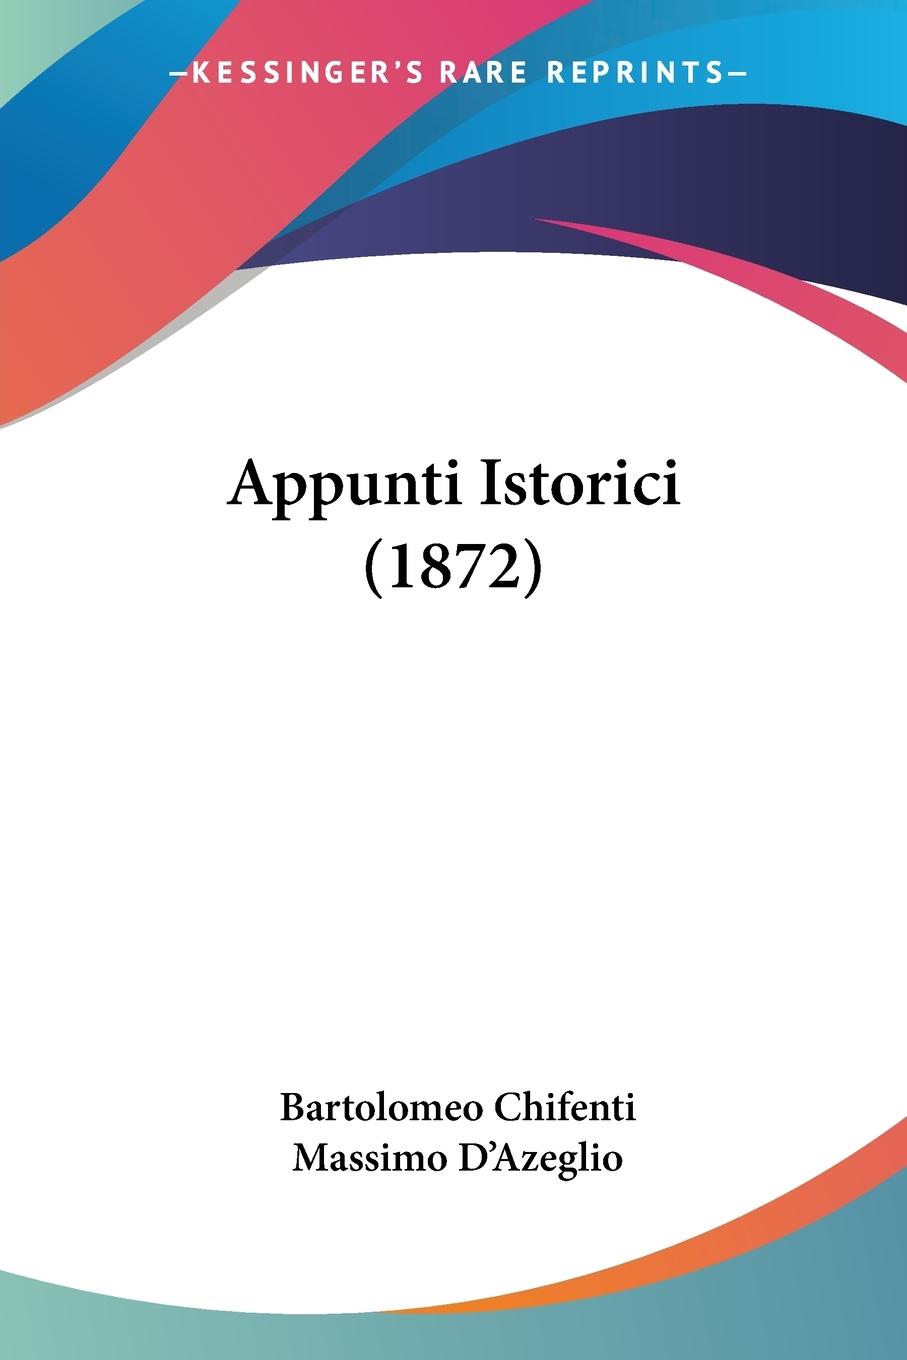 Appunti Istorici (1872) - Chifenti, Bartolomeo D Azeglio, Massimo